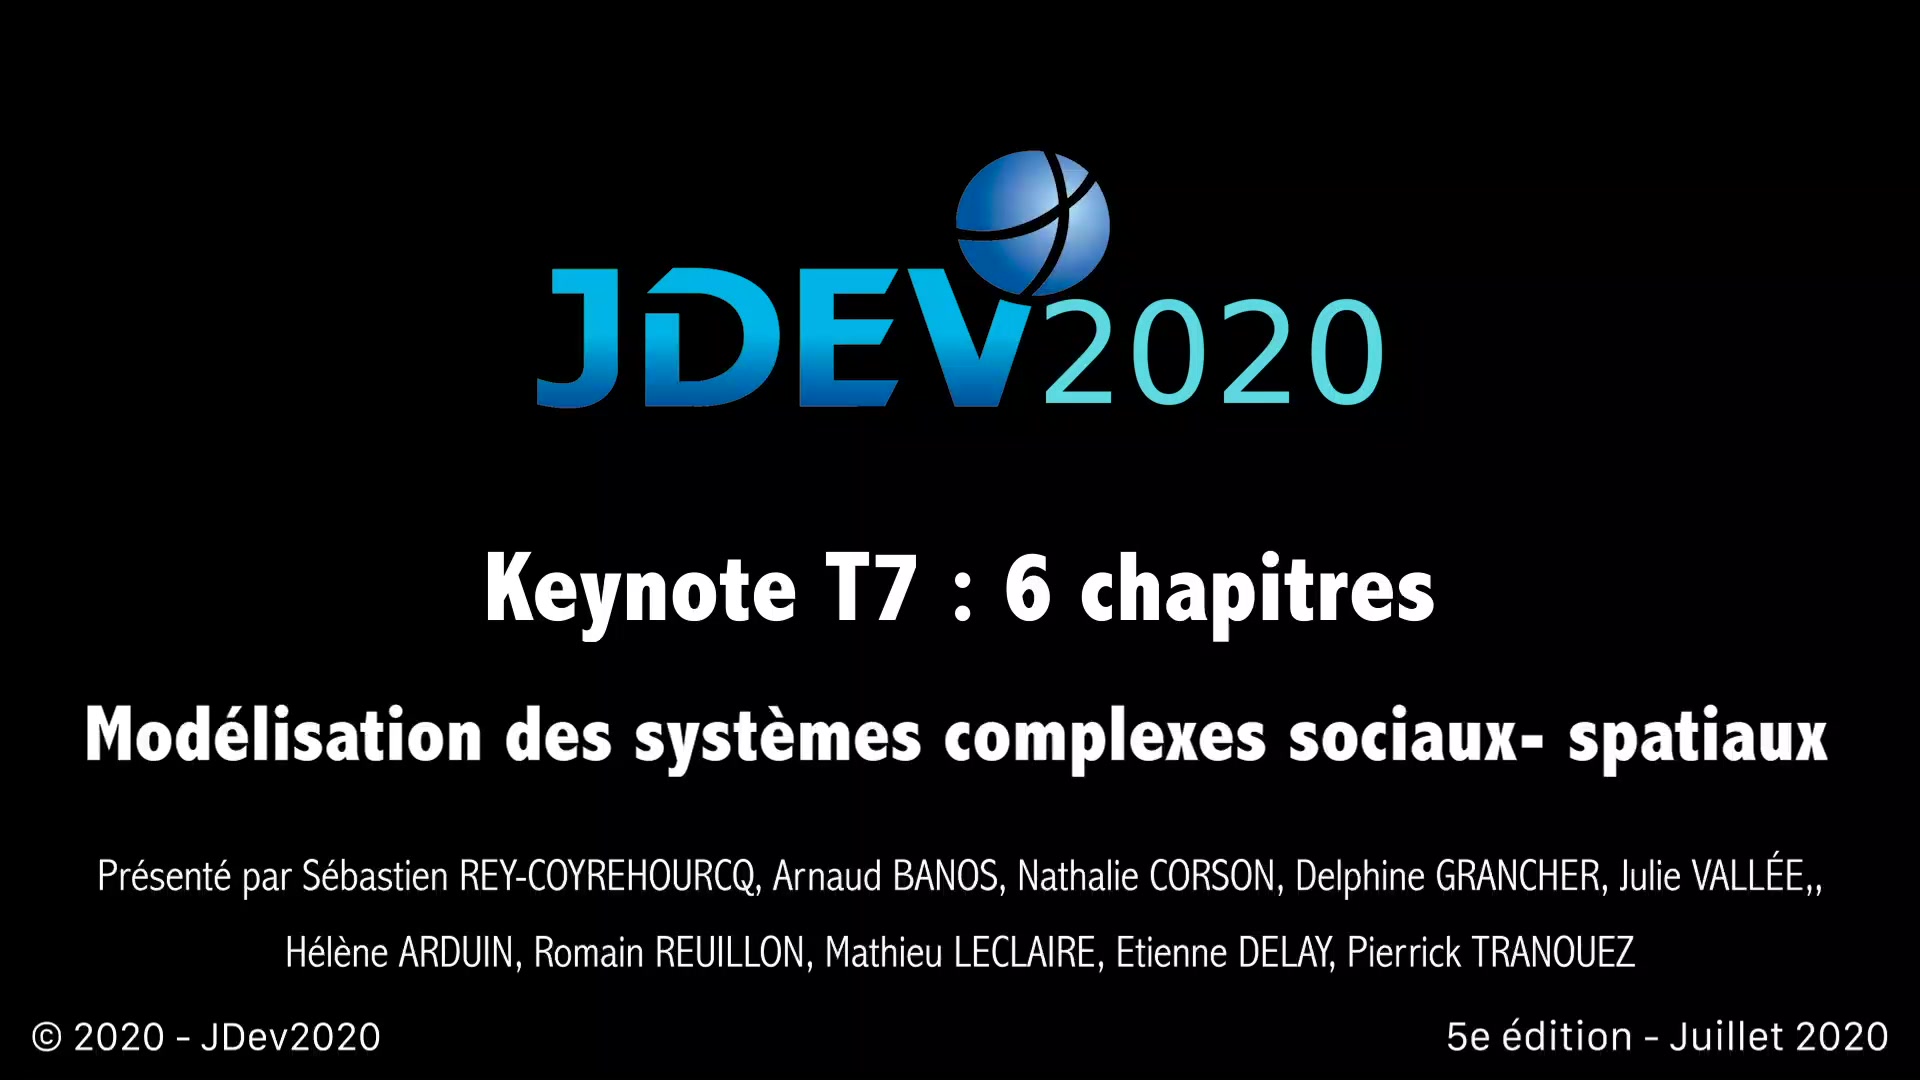 JDev2020 : T7 : Modélisation des systèmes complexes sociaux- spatiaux. Modéliser. Simuler. Coupler et alimenter les modèles par des données hétérogènes. Les explorer par le calcul intensif